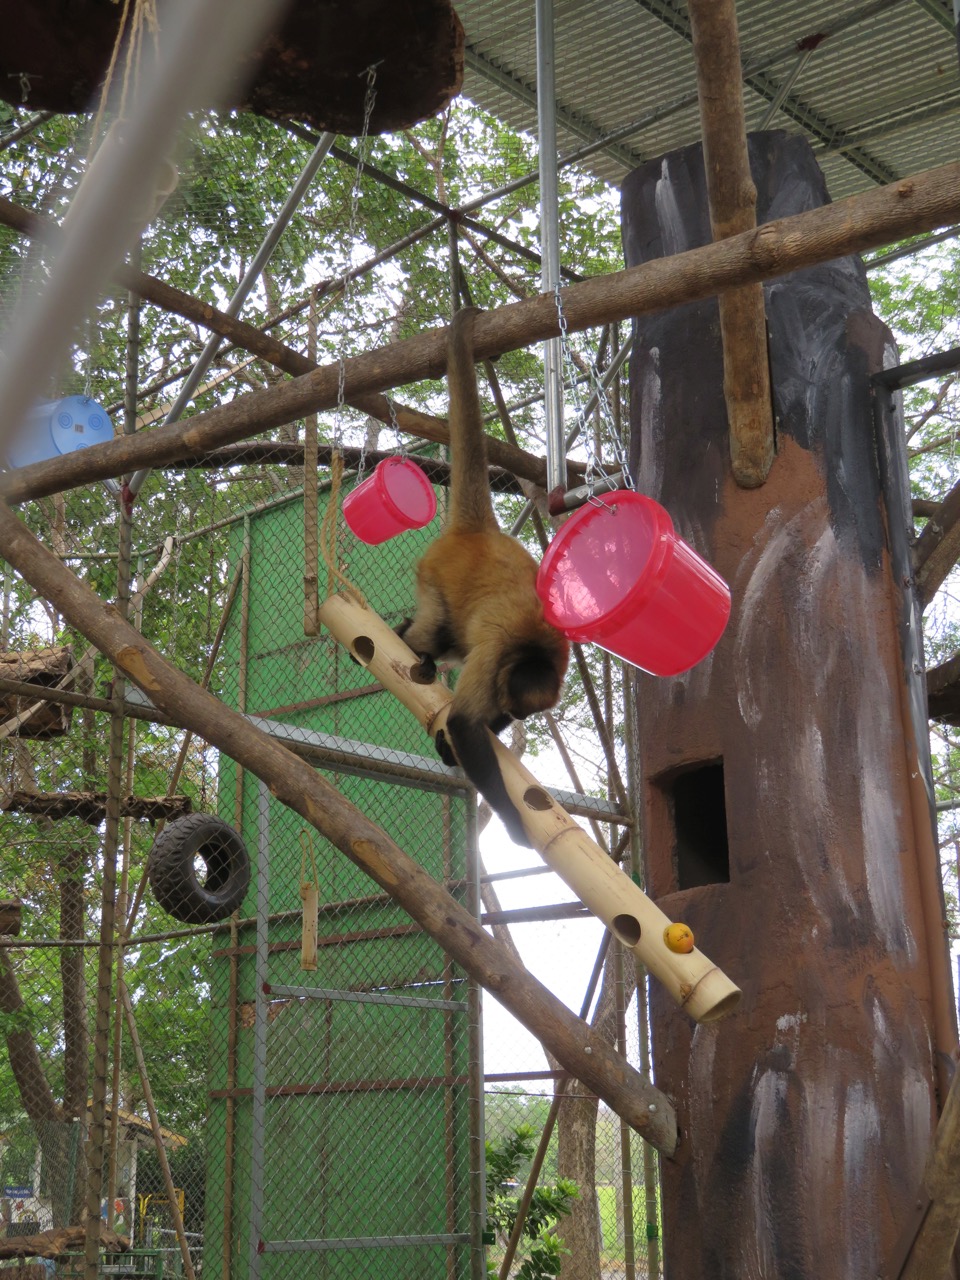 Muchas de las herramientas de enriquecimiento ambiental son aprovechadas por los monos de los recintos para jugar. Foto: Esther Pomareda.